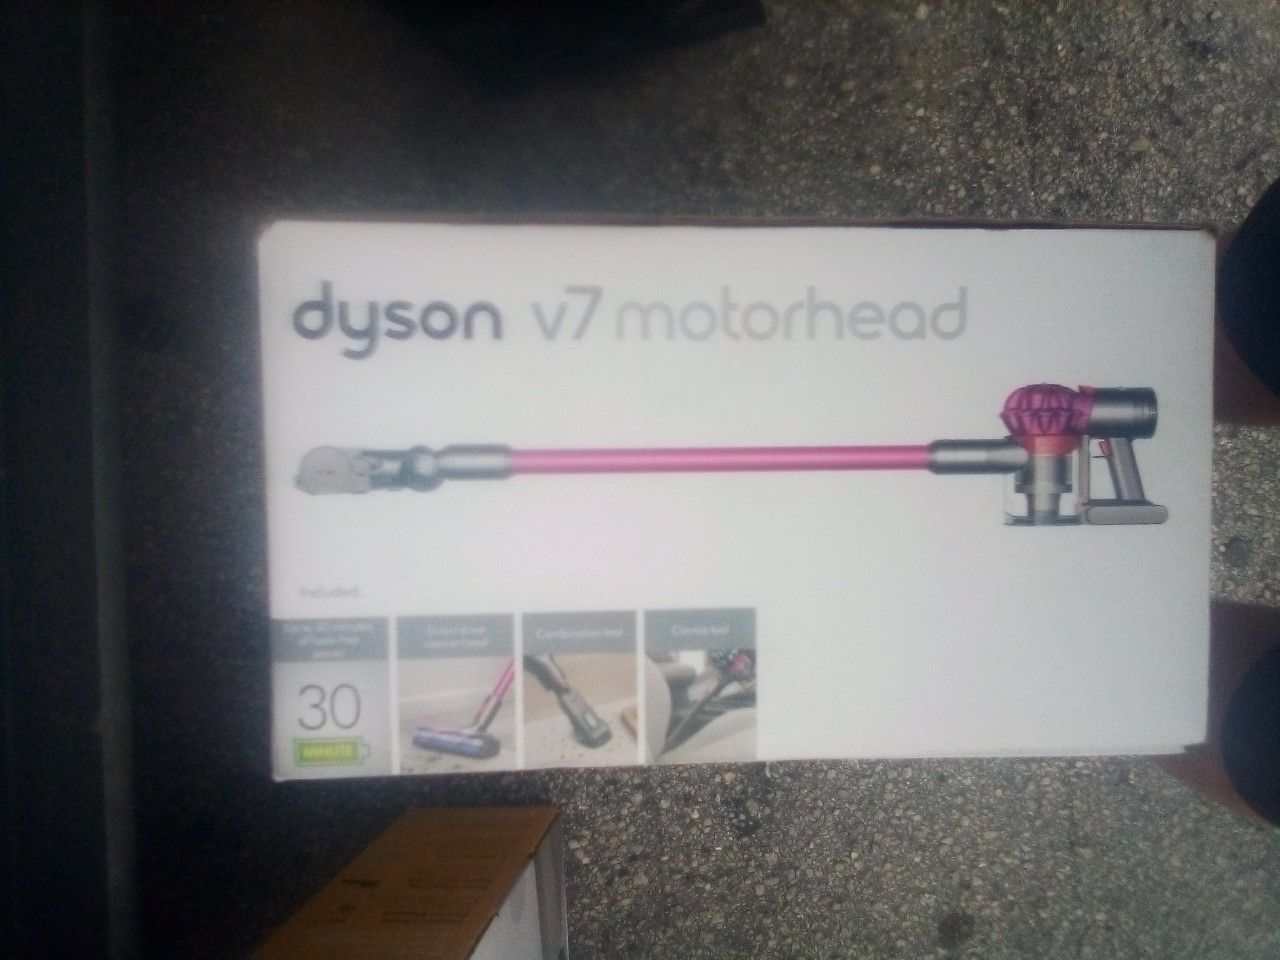 DYSON V7 MotorHead * Brand New* Sealed* $168